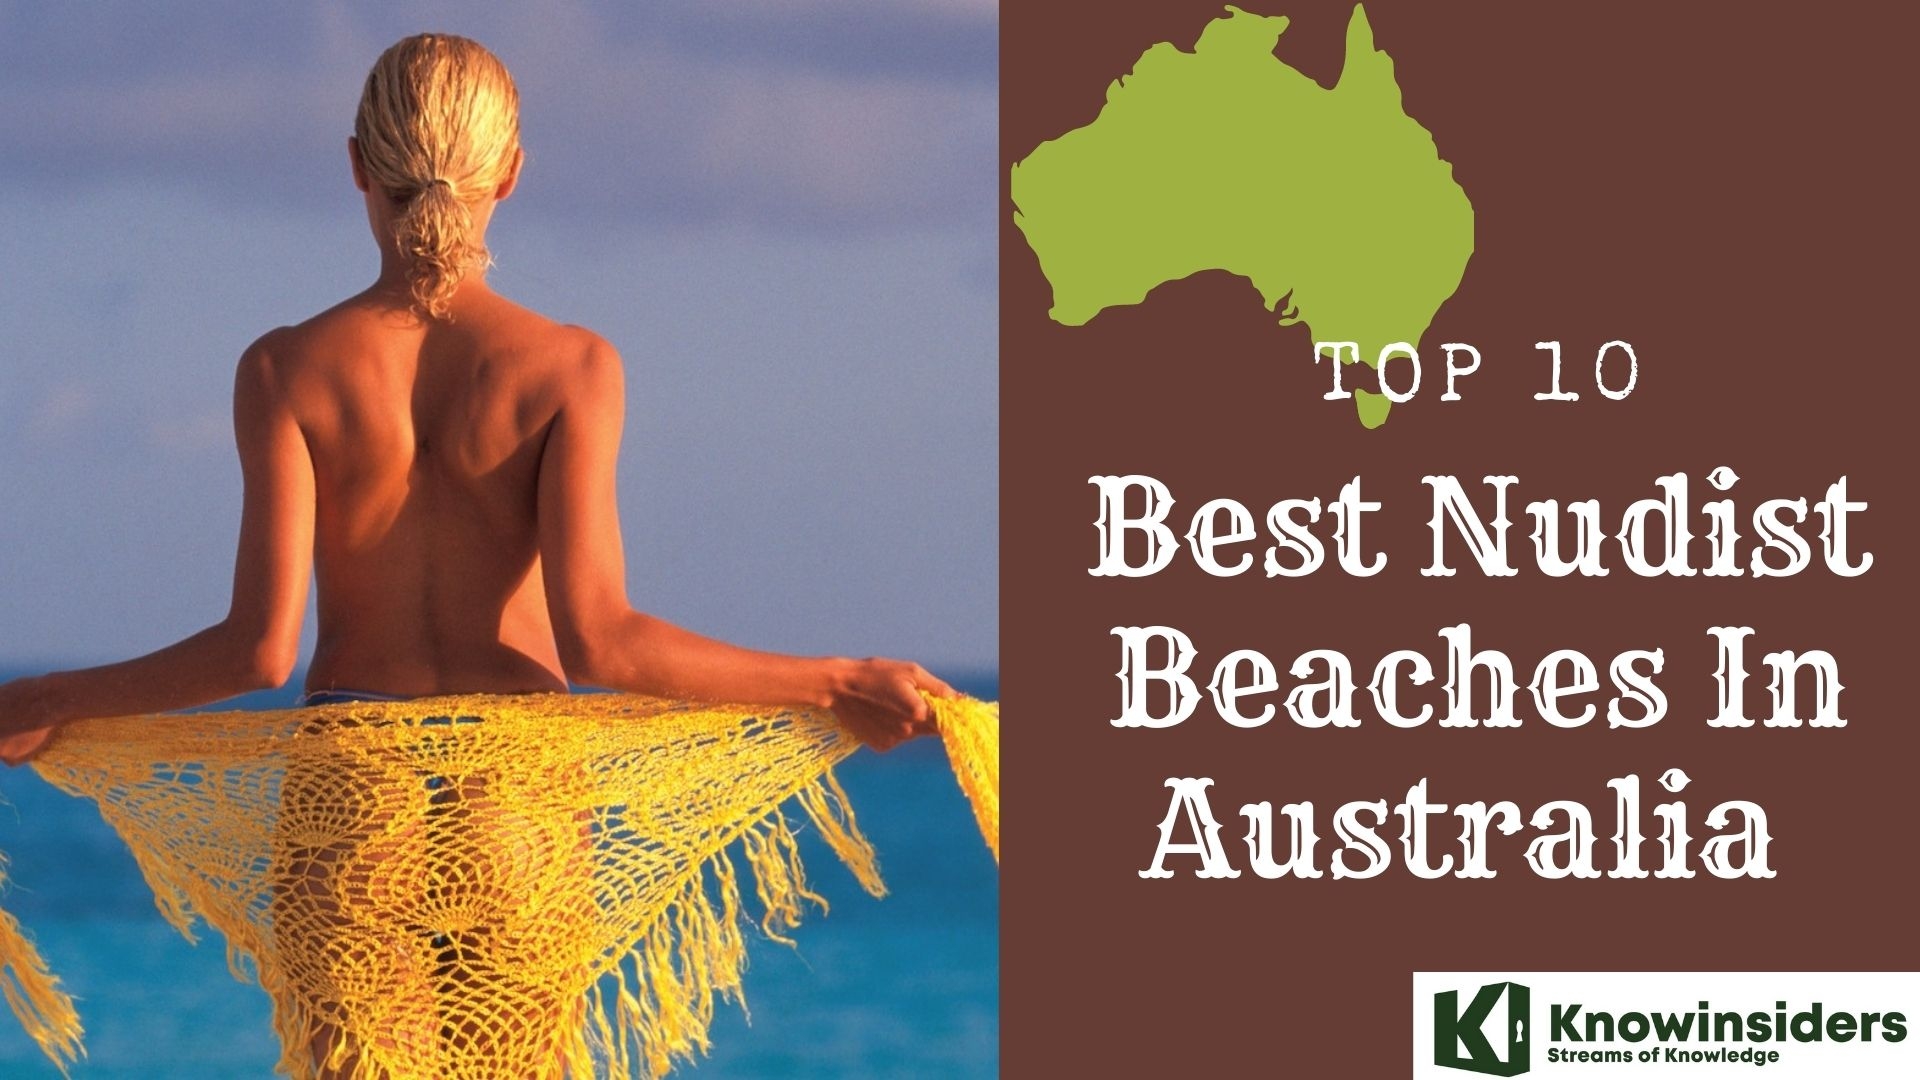 Top 10 Best Nudist Beaches in Australia today